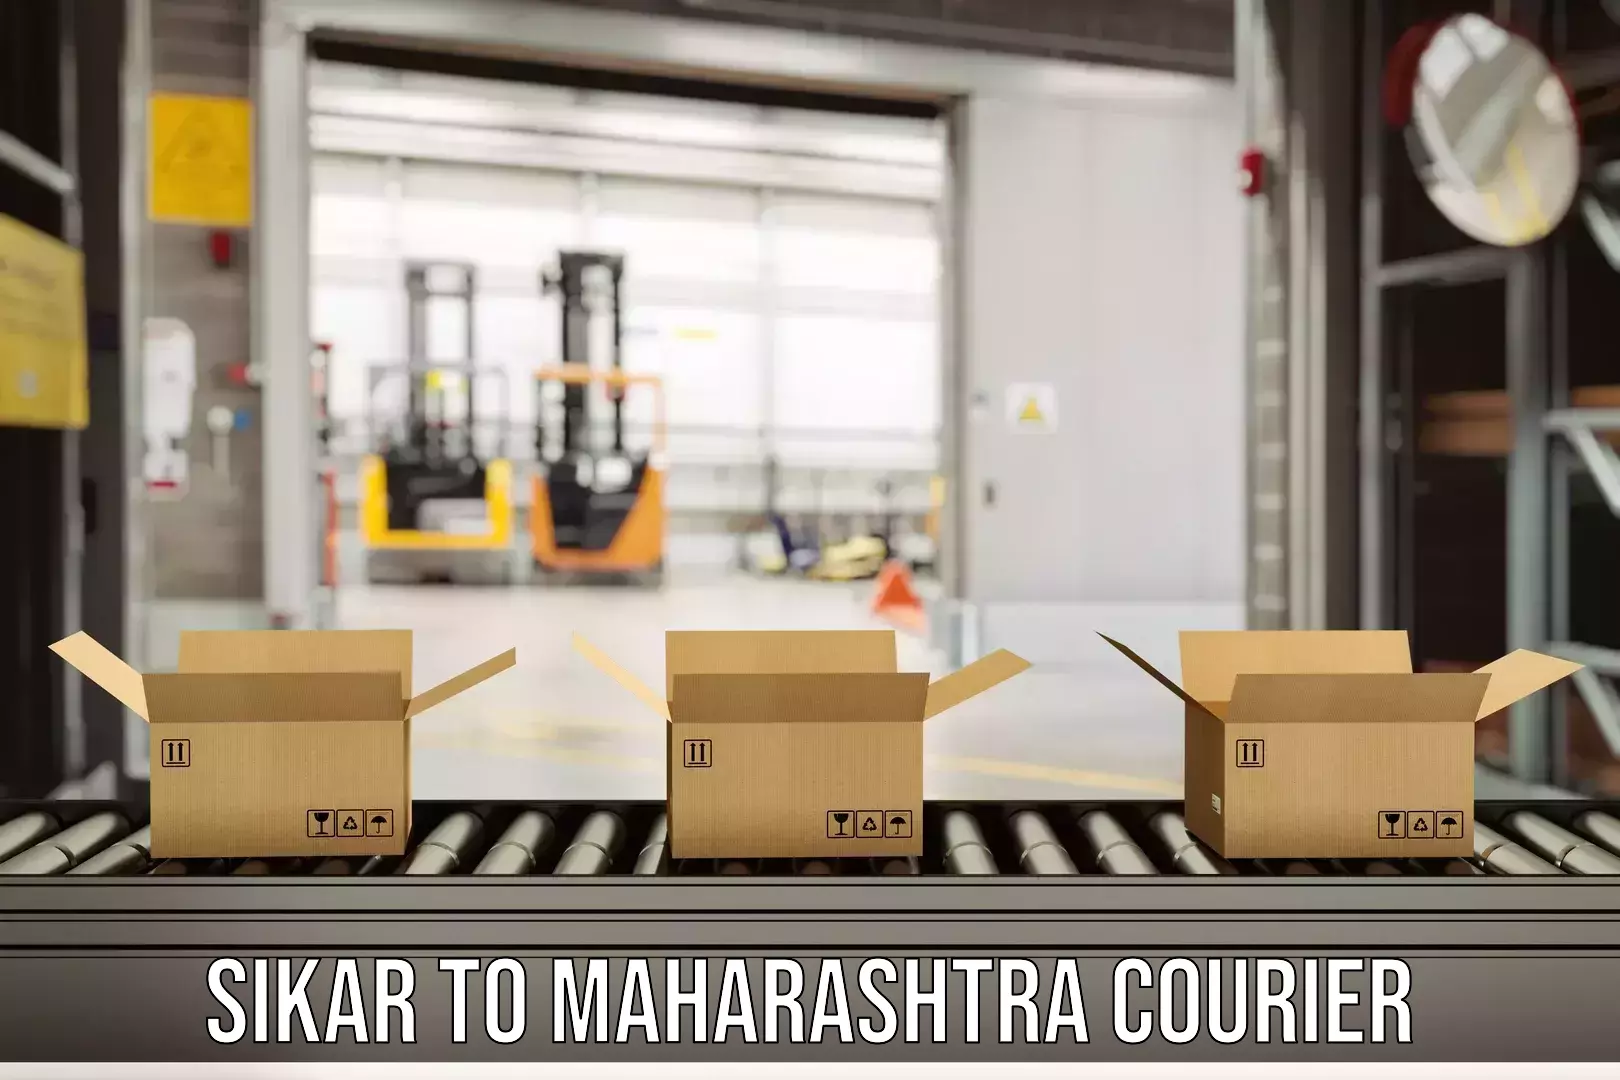 Courier service efficiency Sikar to Maharashtra